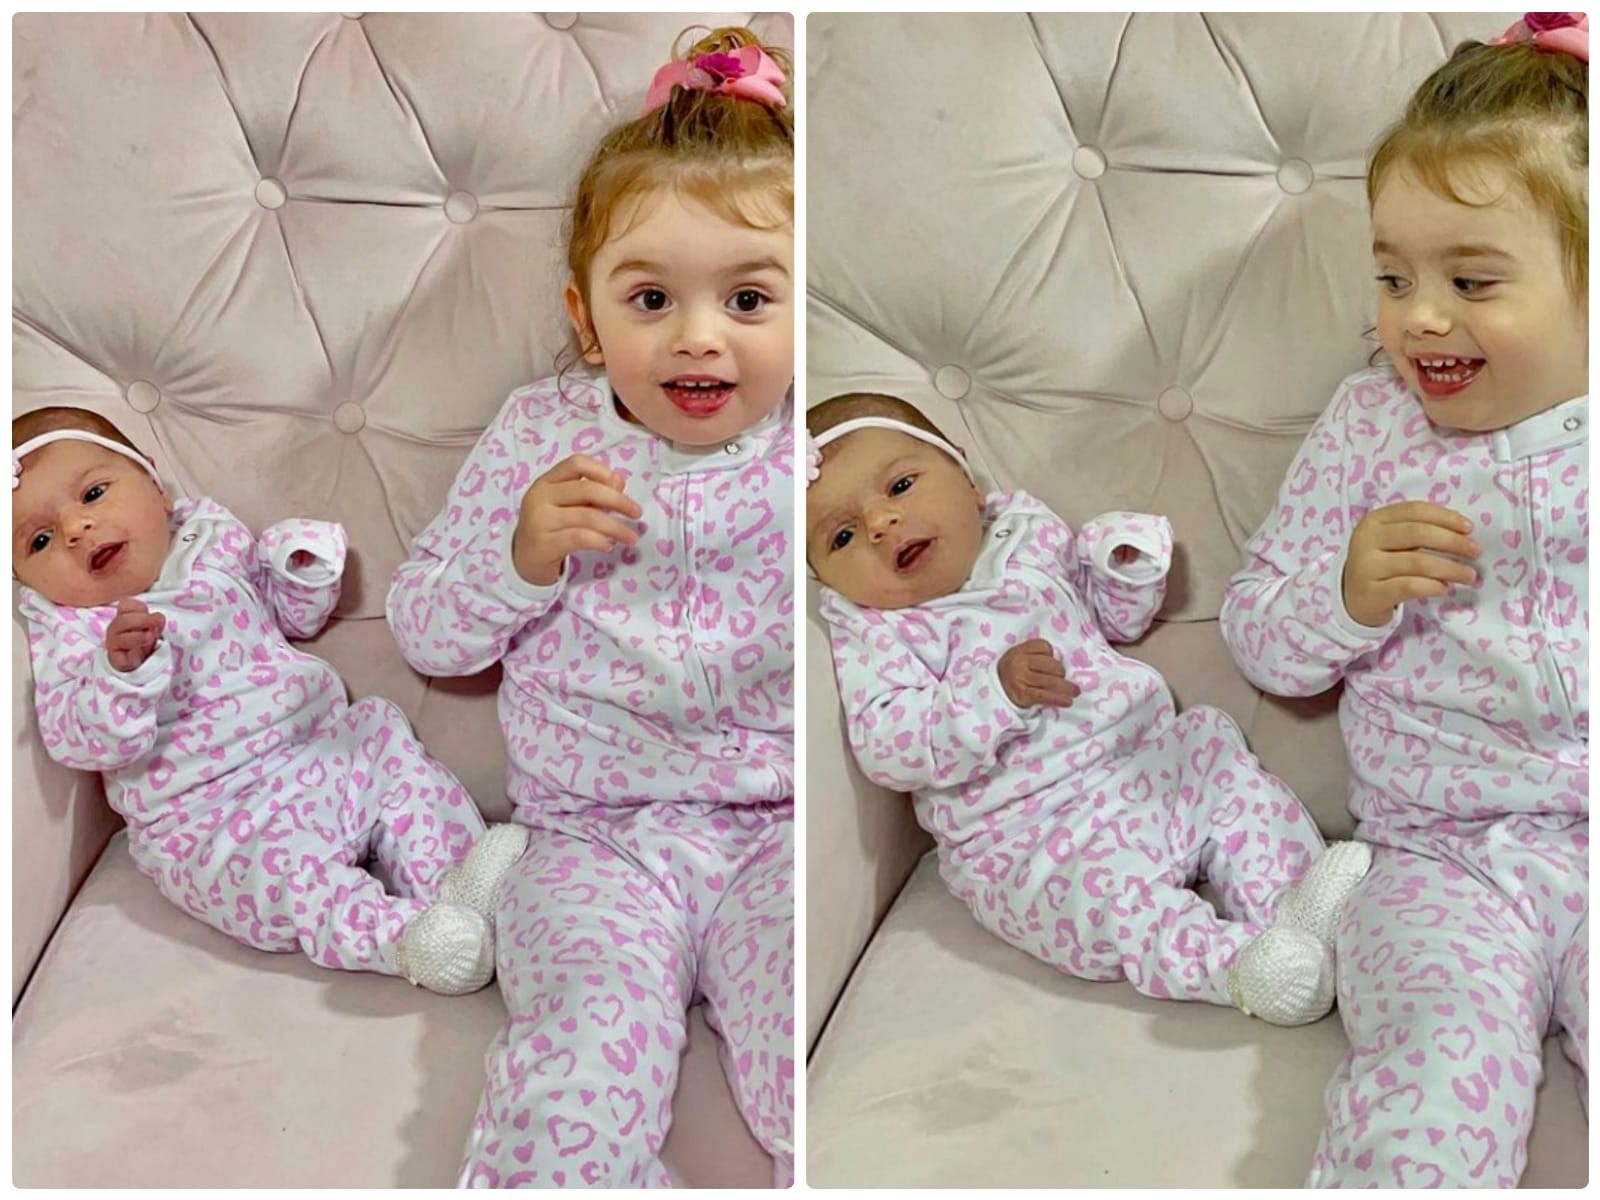 Thaeme mostra Ivy e Liz com pijamas iguais (Foto: Reprodução/Instagram)